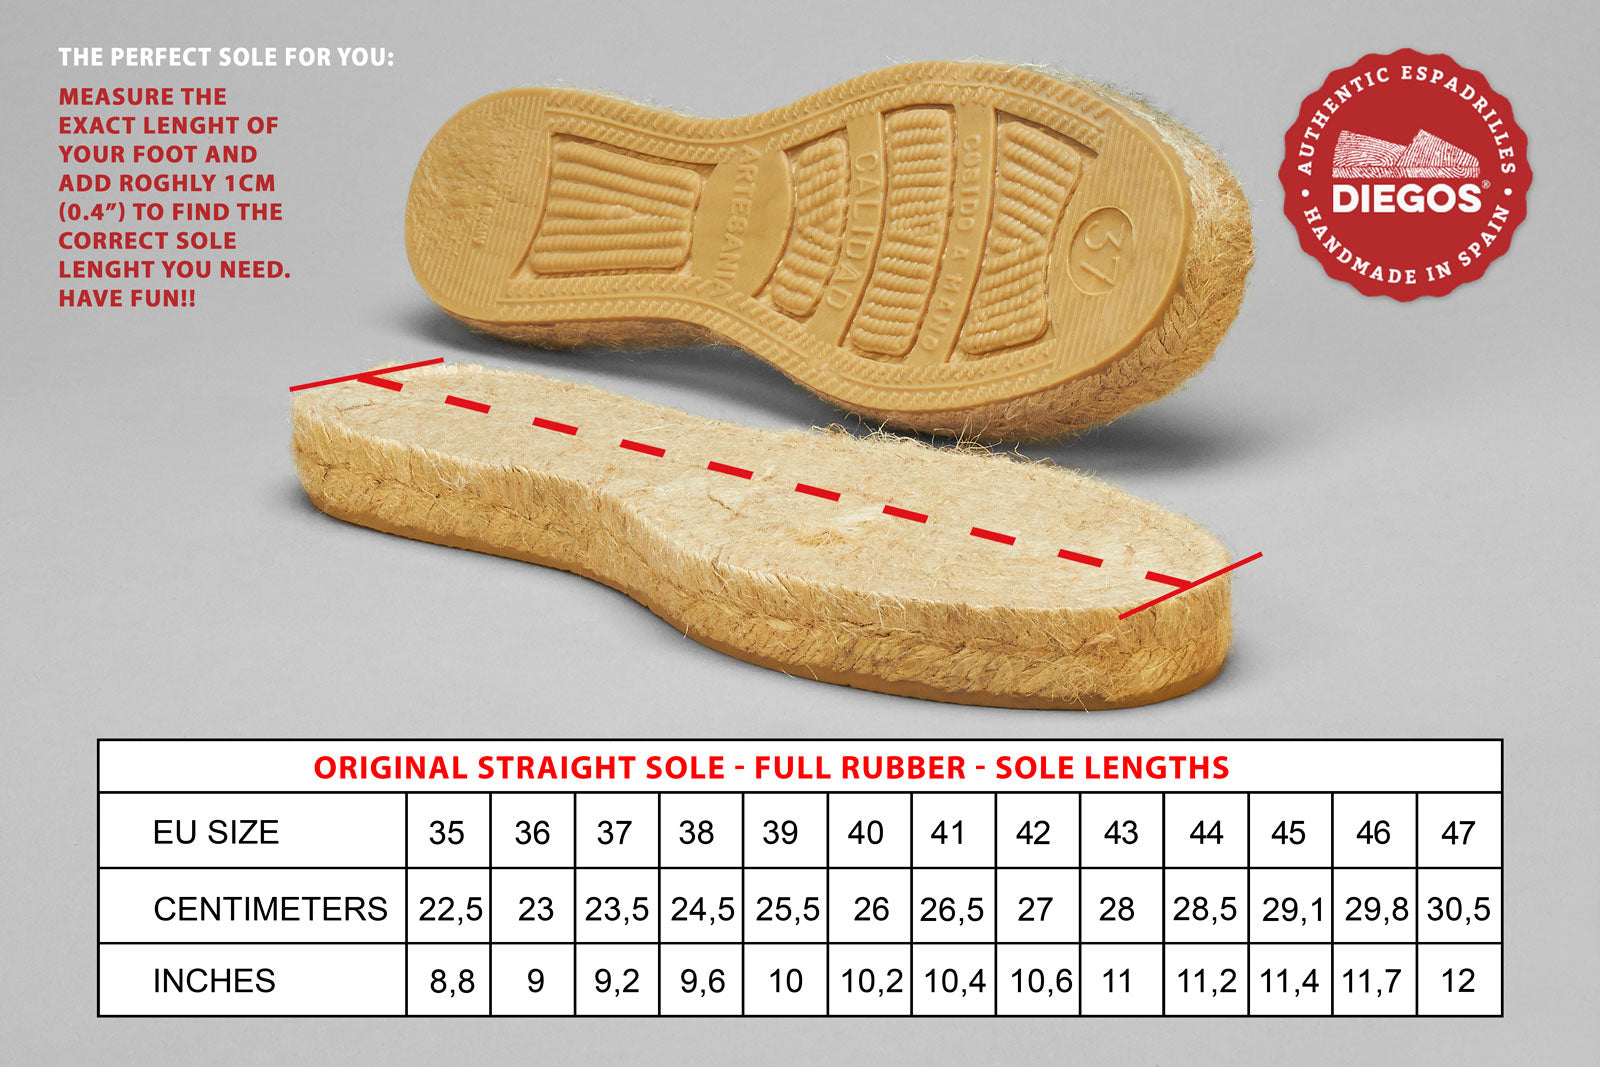 Original straight sole - full rubber